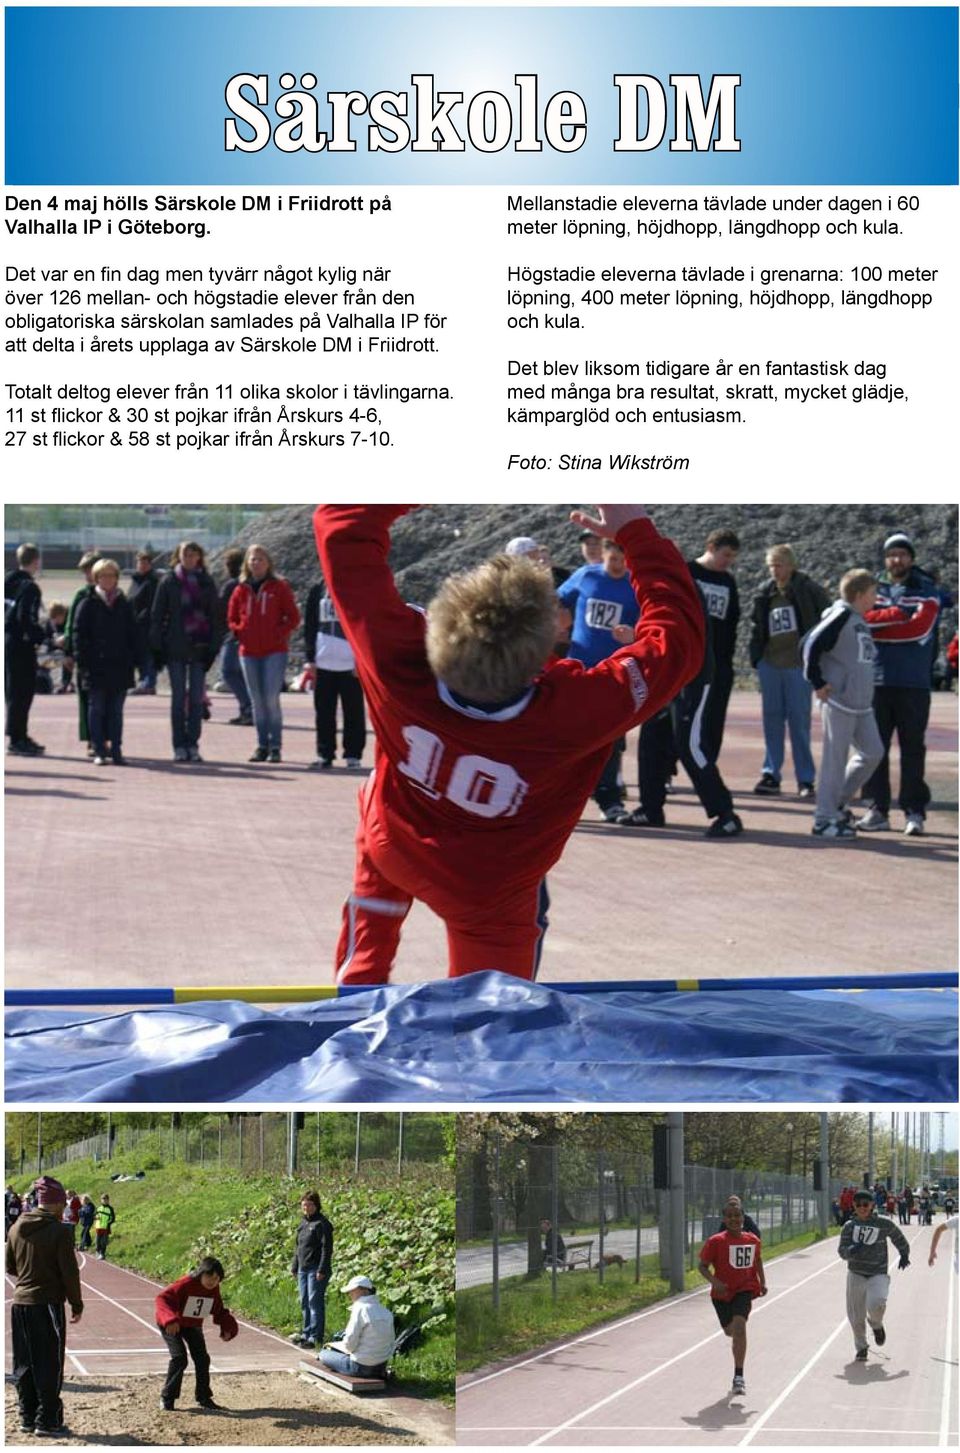 Friidrott. Totalt deltog elever från 11 olika skolor i tävlingarna. 11 st flickor & 30 st pojkar ifrån Årskurs 4-6, 27 st flickor & 58 st pojkar ifrån Årskurs 7-10.